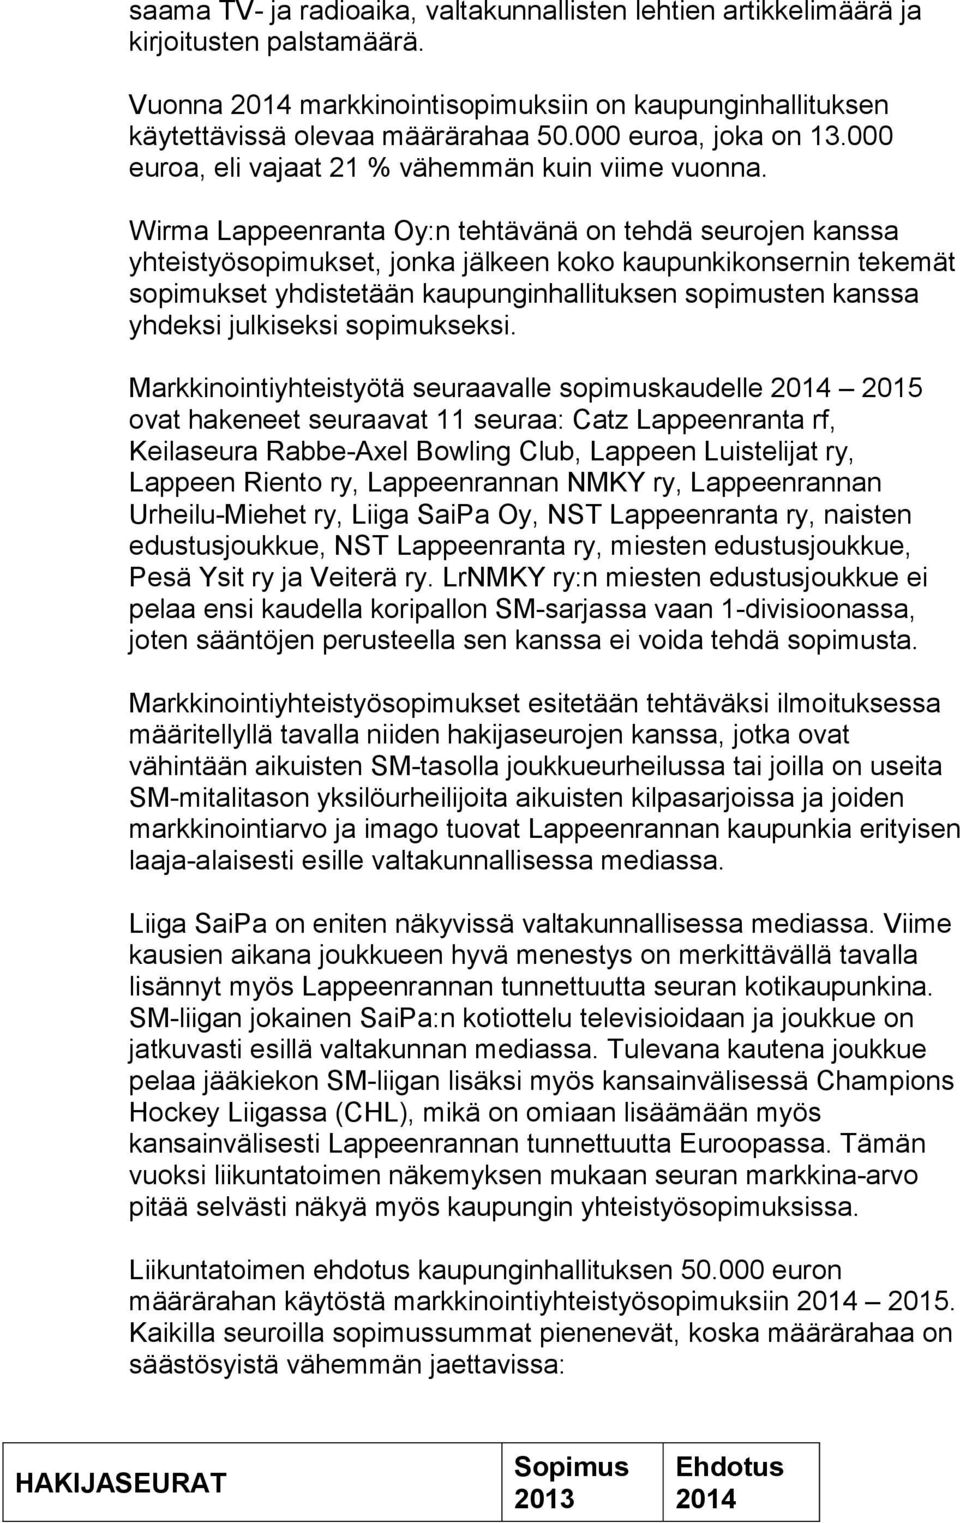 Wirma Lappeenranta Oy:n tehtävänä on tehdä seurojen kanssa yhteistyösopimukset, jonka jälkeen koko kaupunkikonsernin tekemät sopimukset yhdistetään kaupunginhallituksen sopimusten kanssa yhdeksi